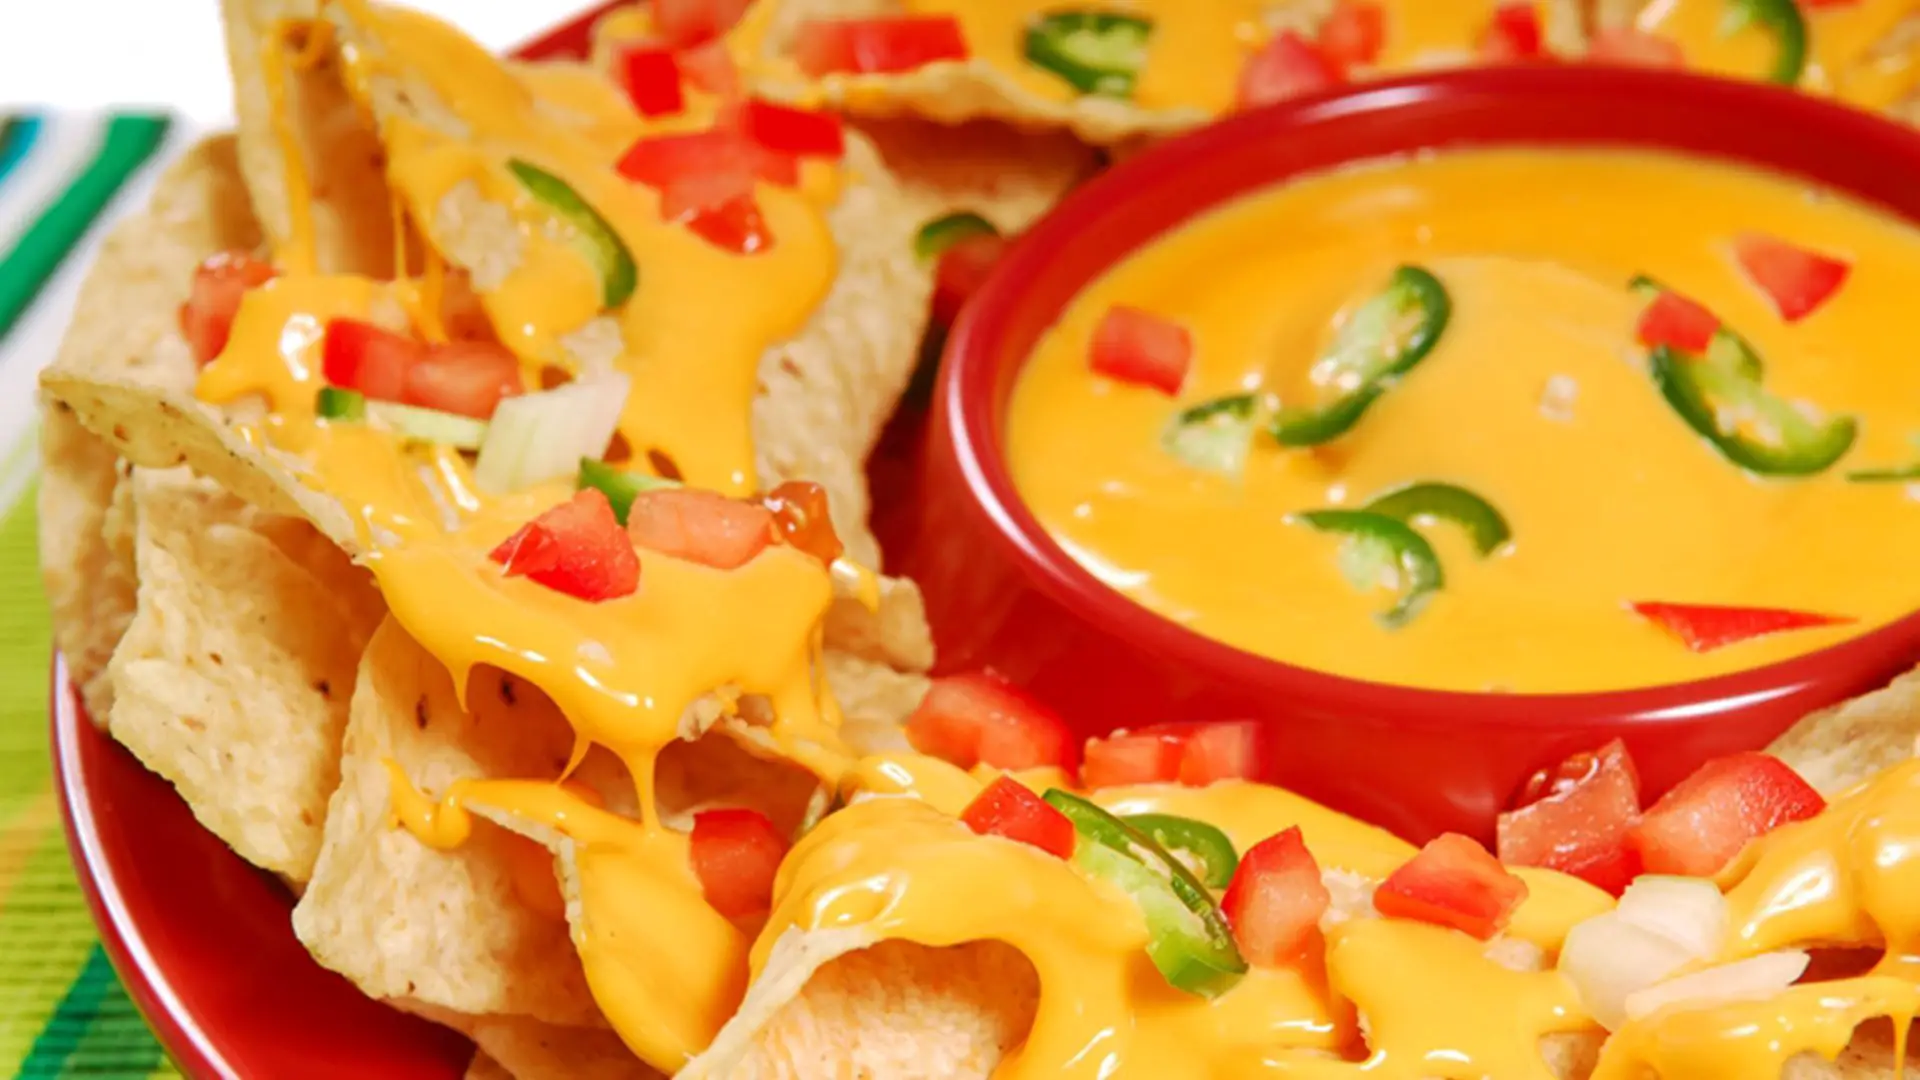 Stop hoarding Velveeta! Make queso dip at home